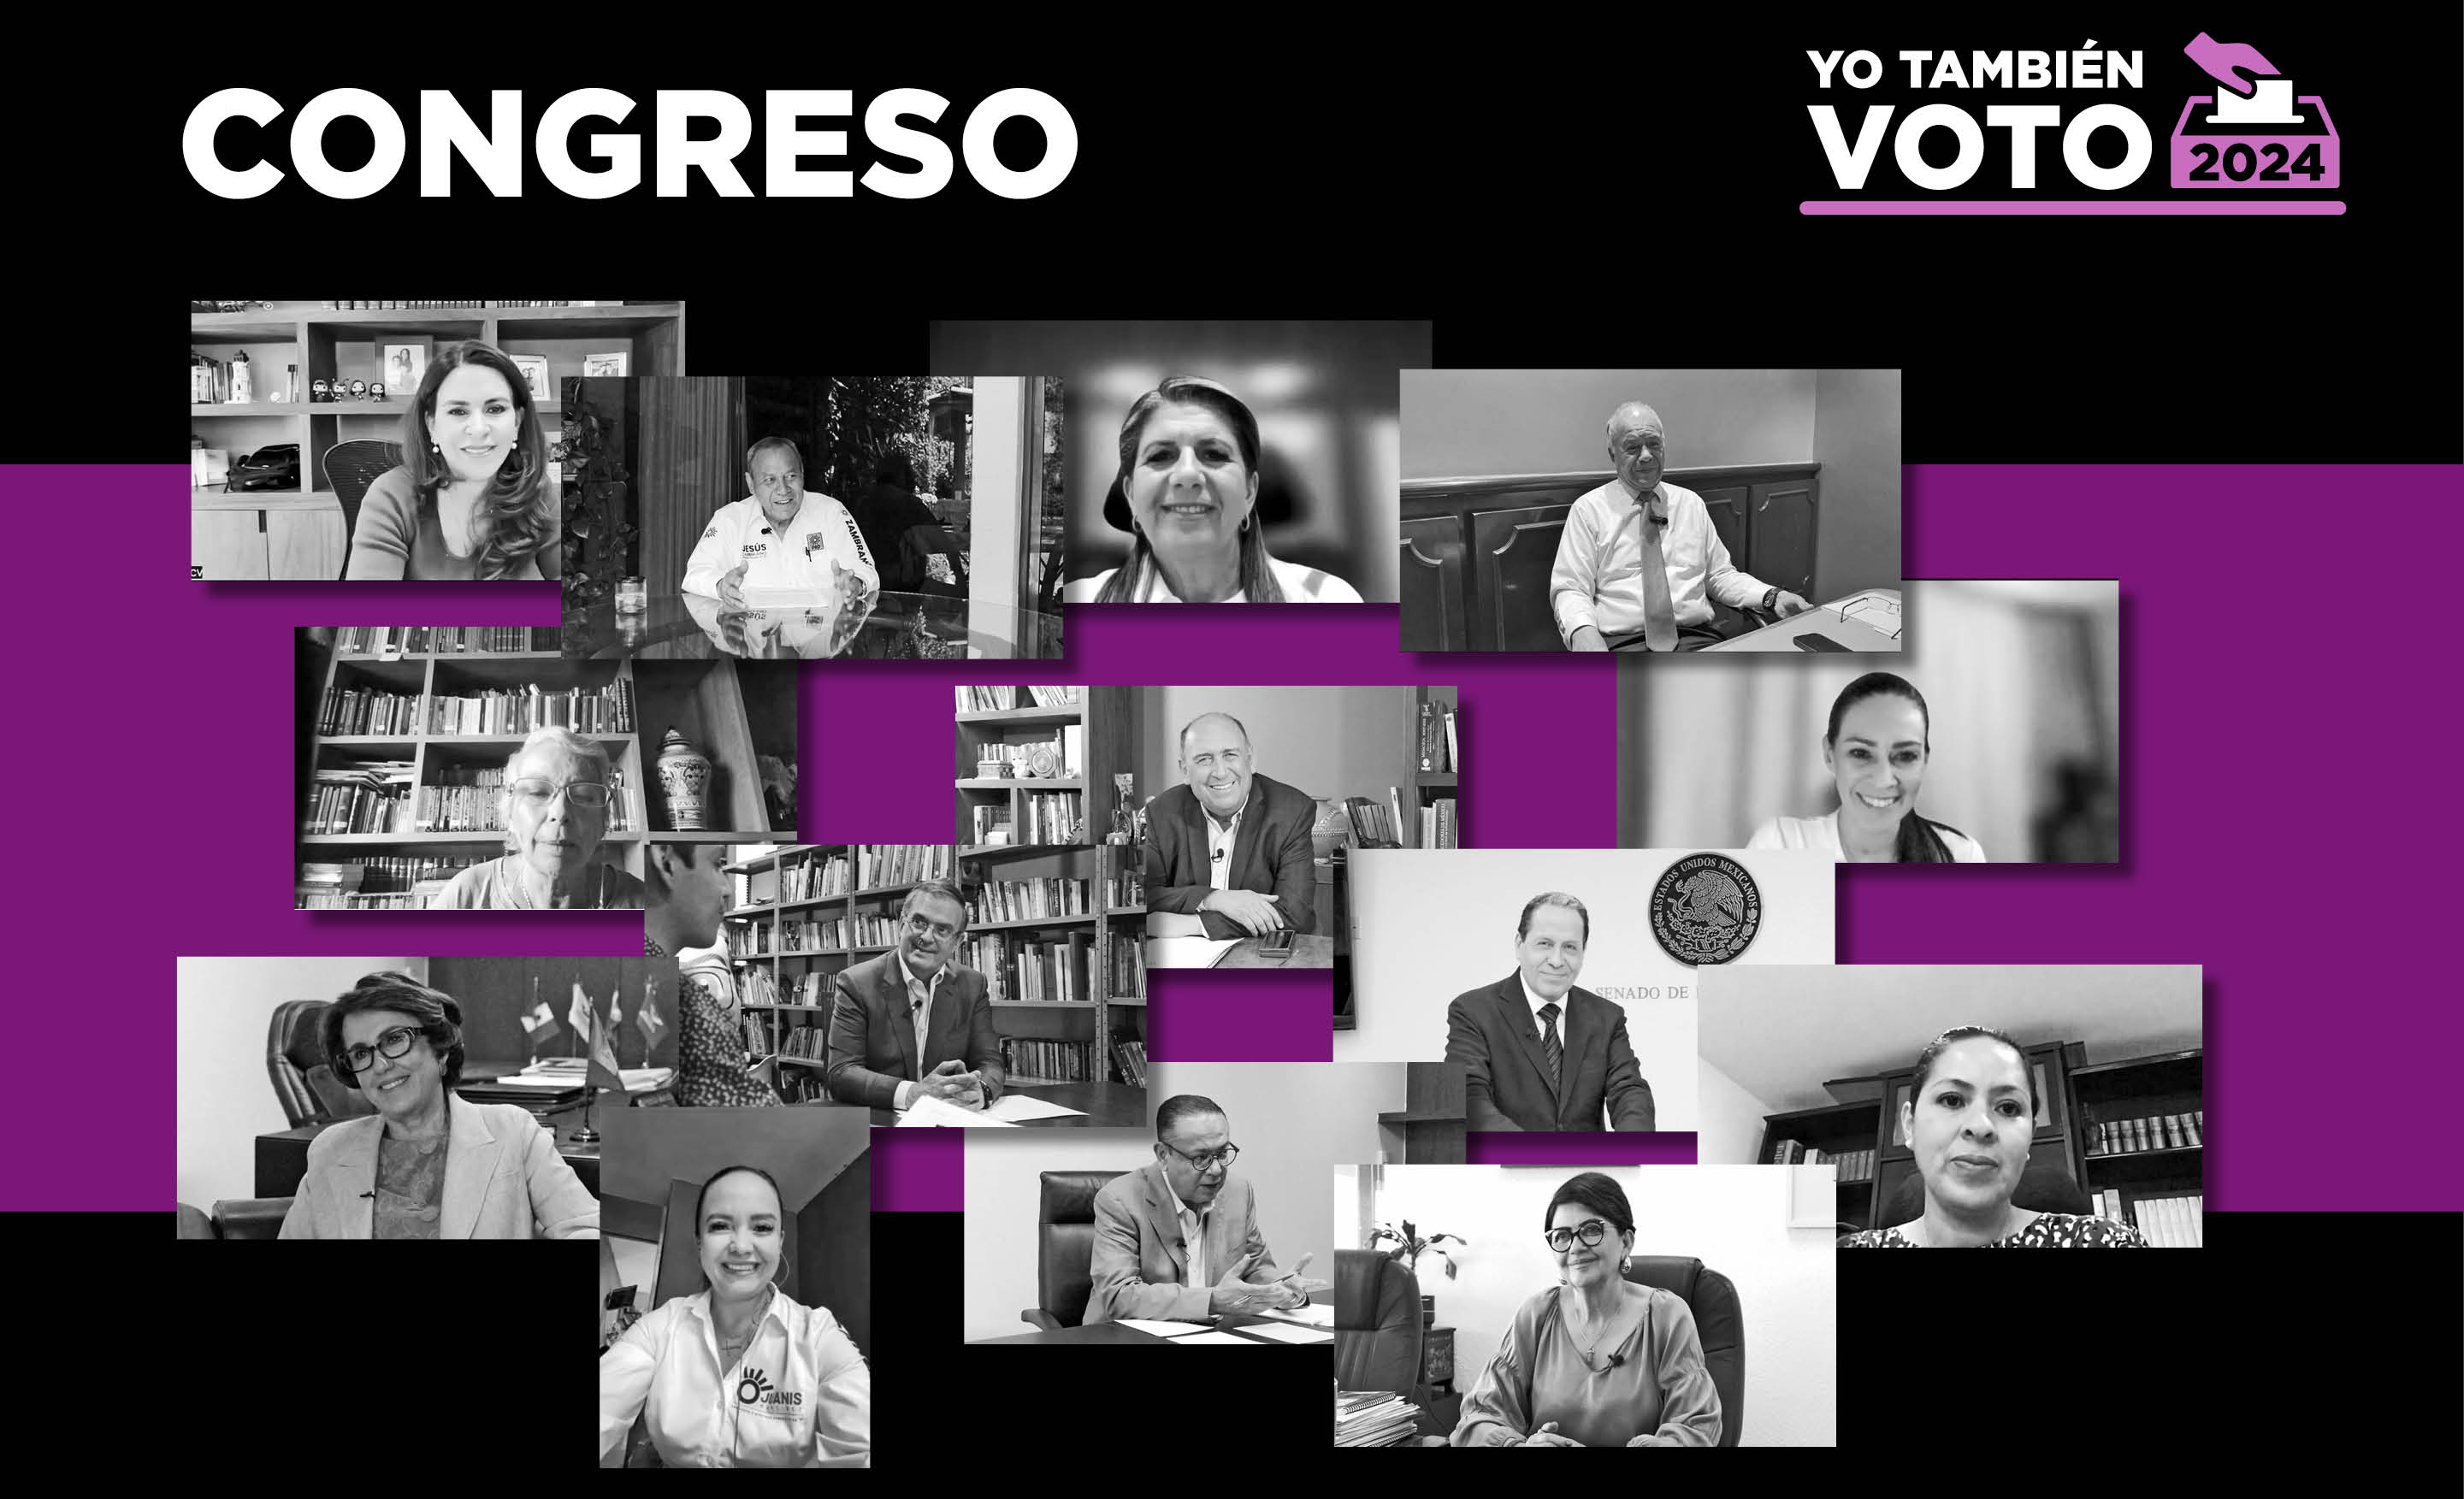 14 polític@s clave de nuestro Congreso respondieron el cuestionario de #YoTambiénVoto2024